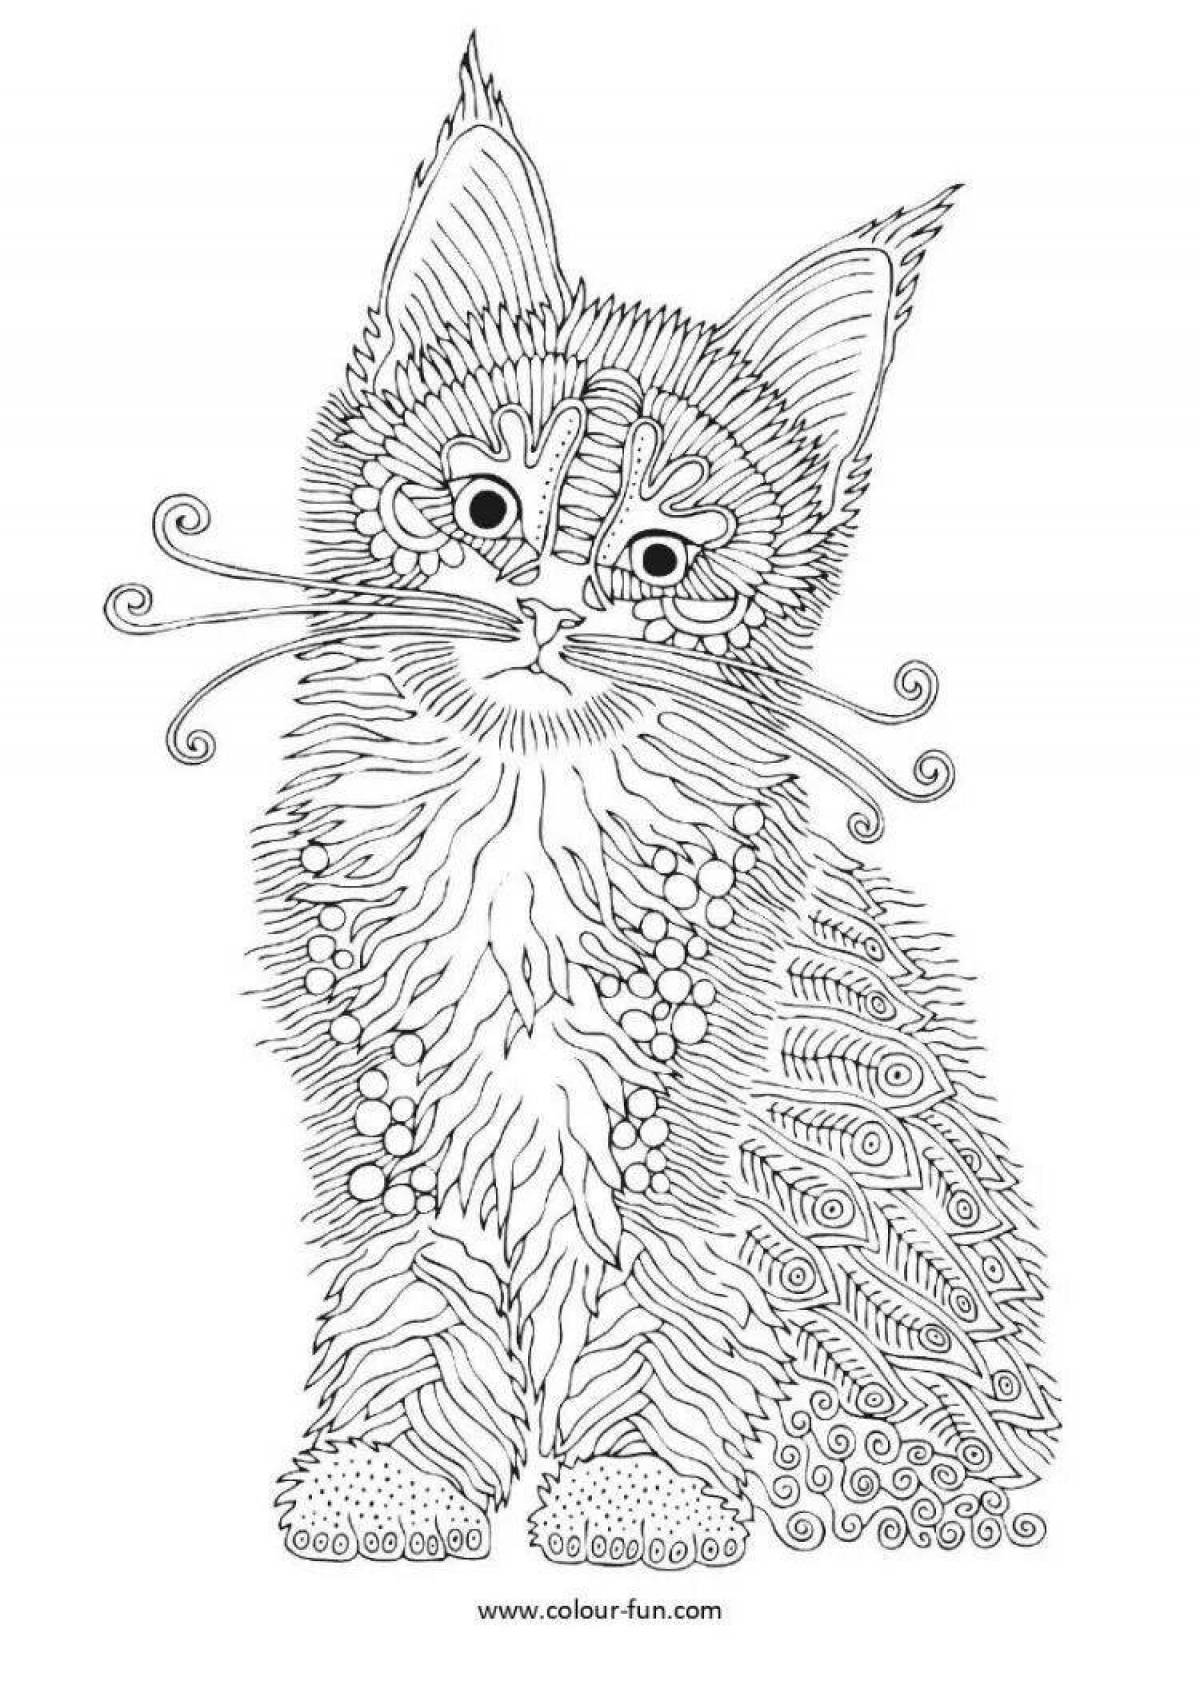 Озорная раскраска антистрессовый котенок